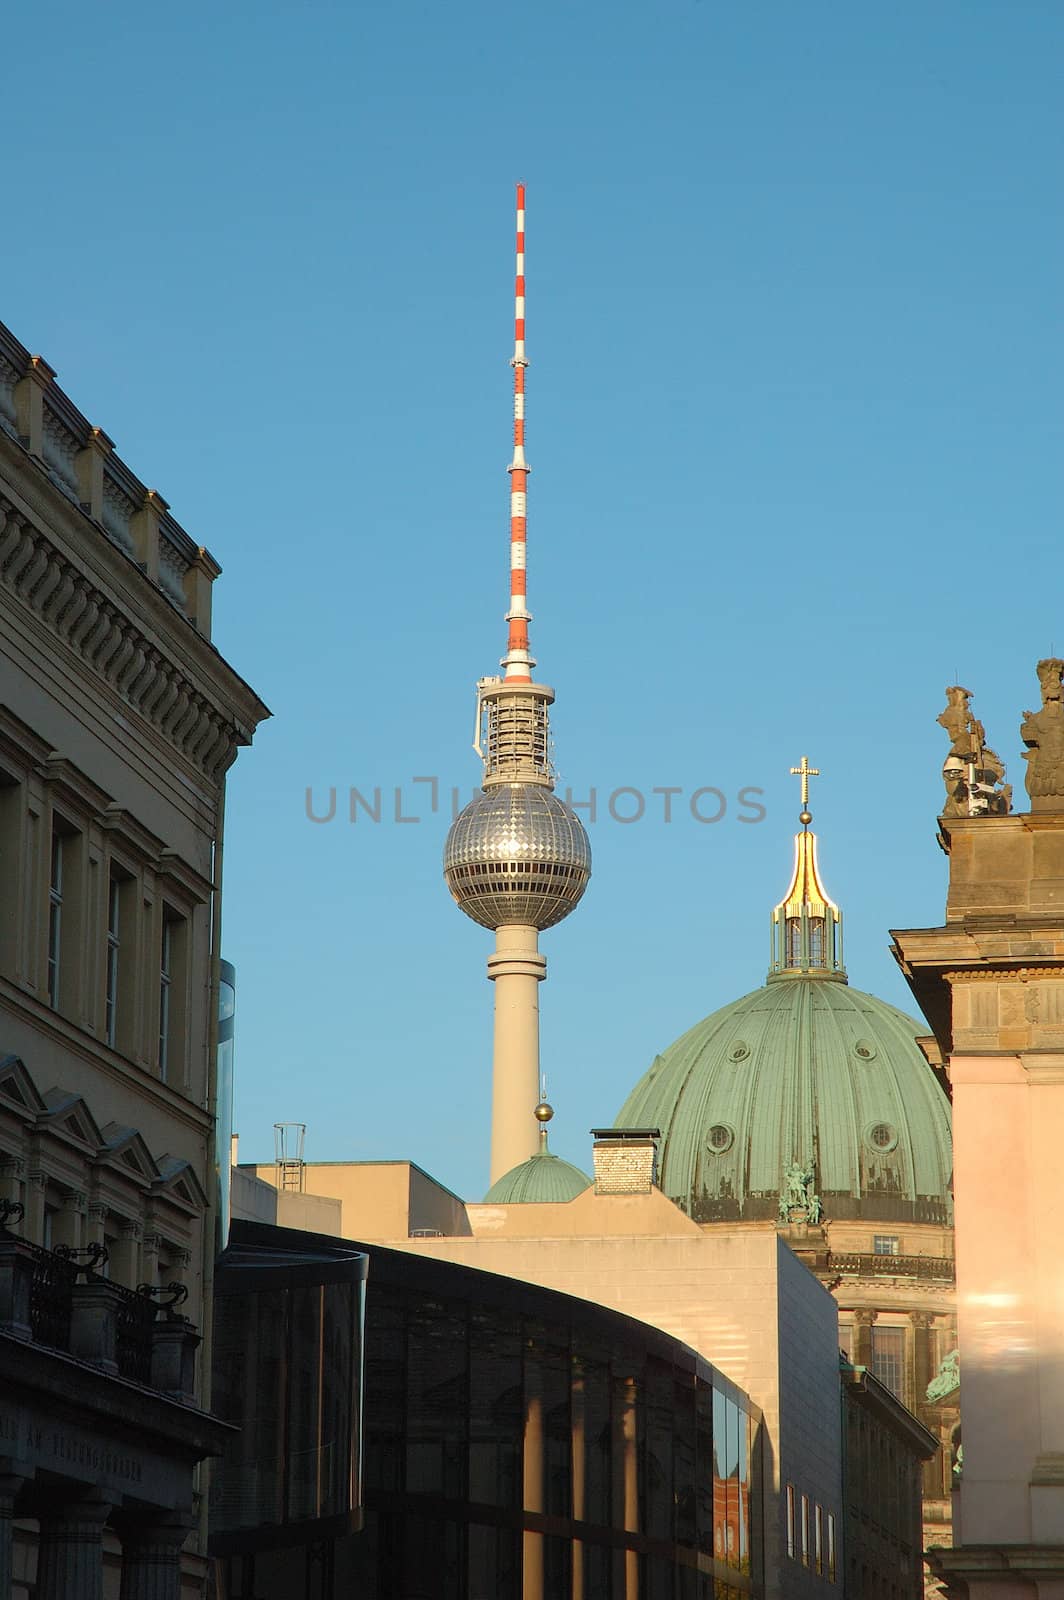 TV tower in Berlin by janhetman